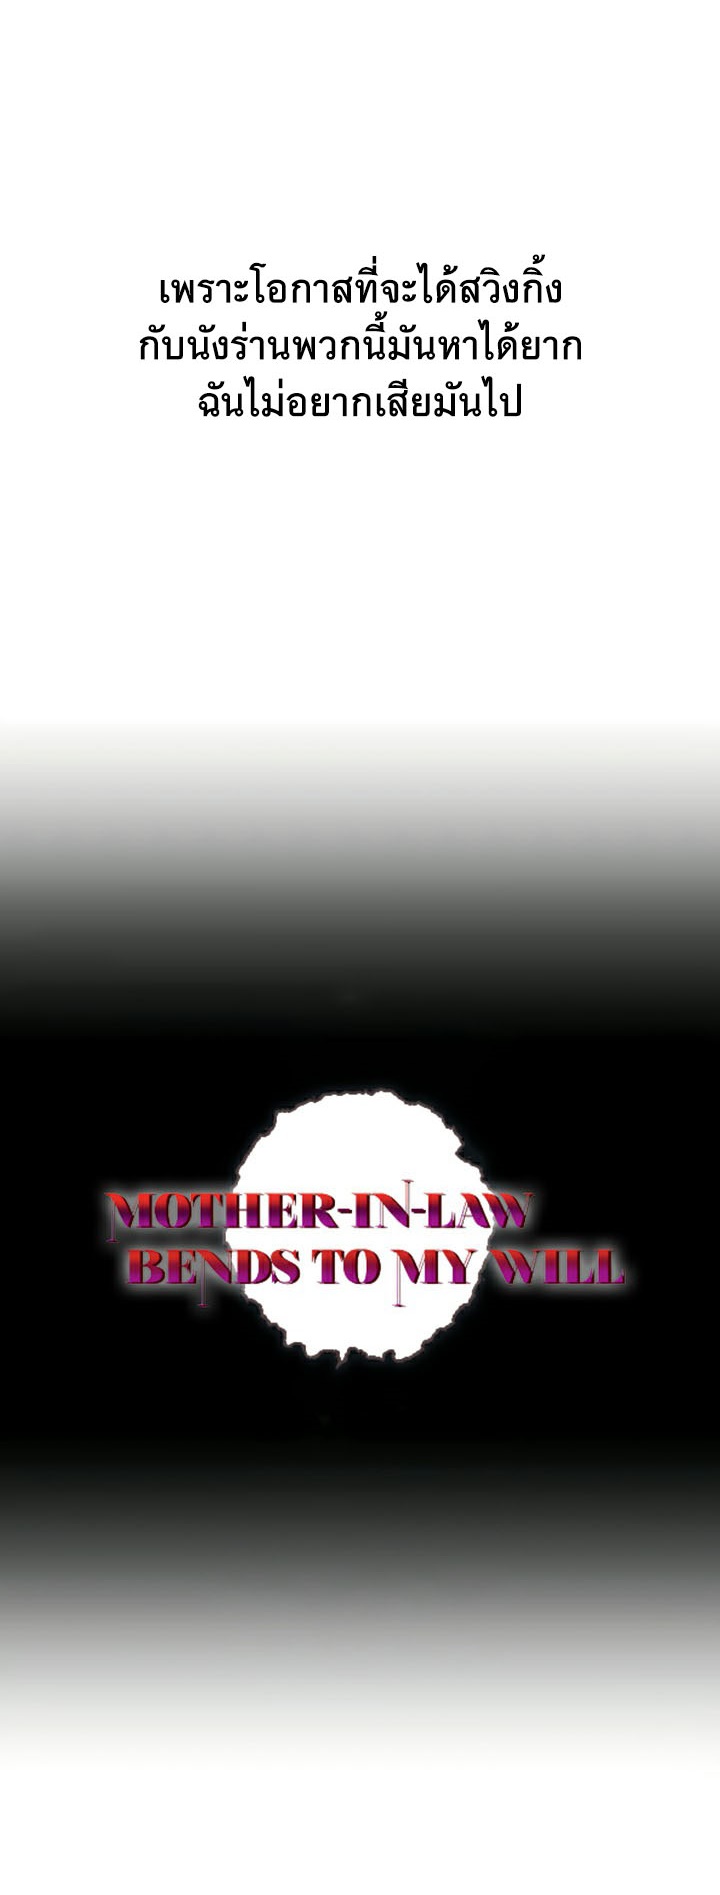 อ่านโดจิน เรื่อง Mother in Law Bends To My Will 25 04